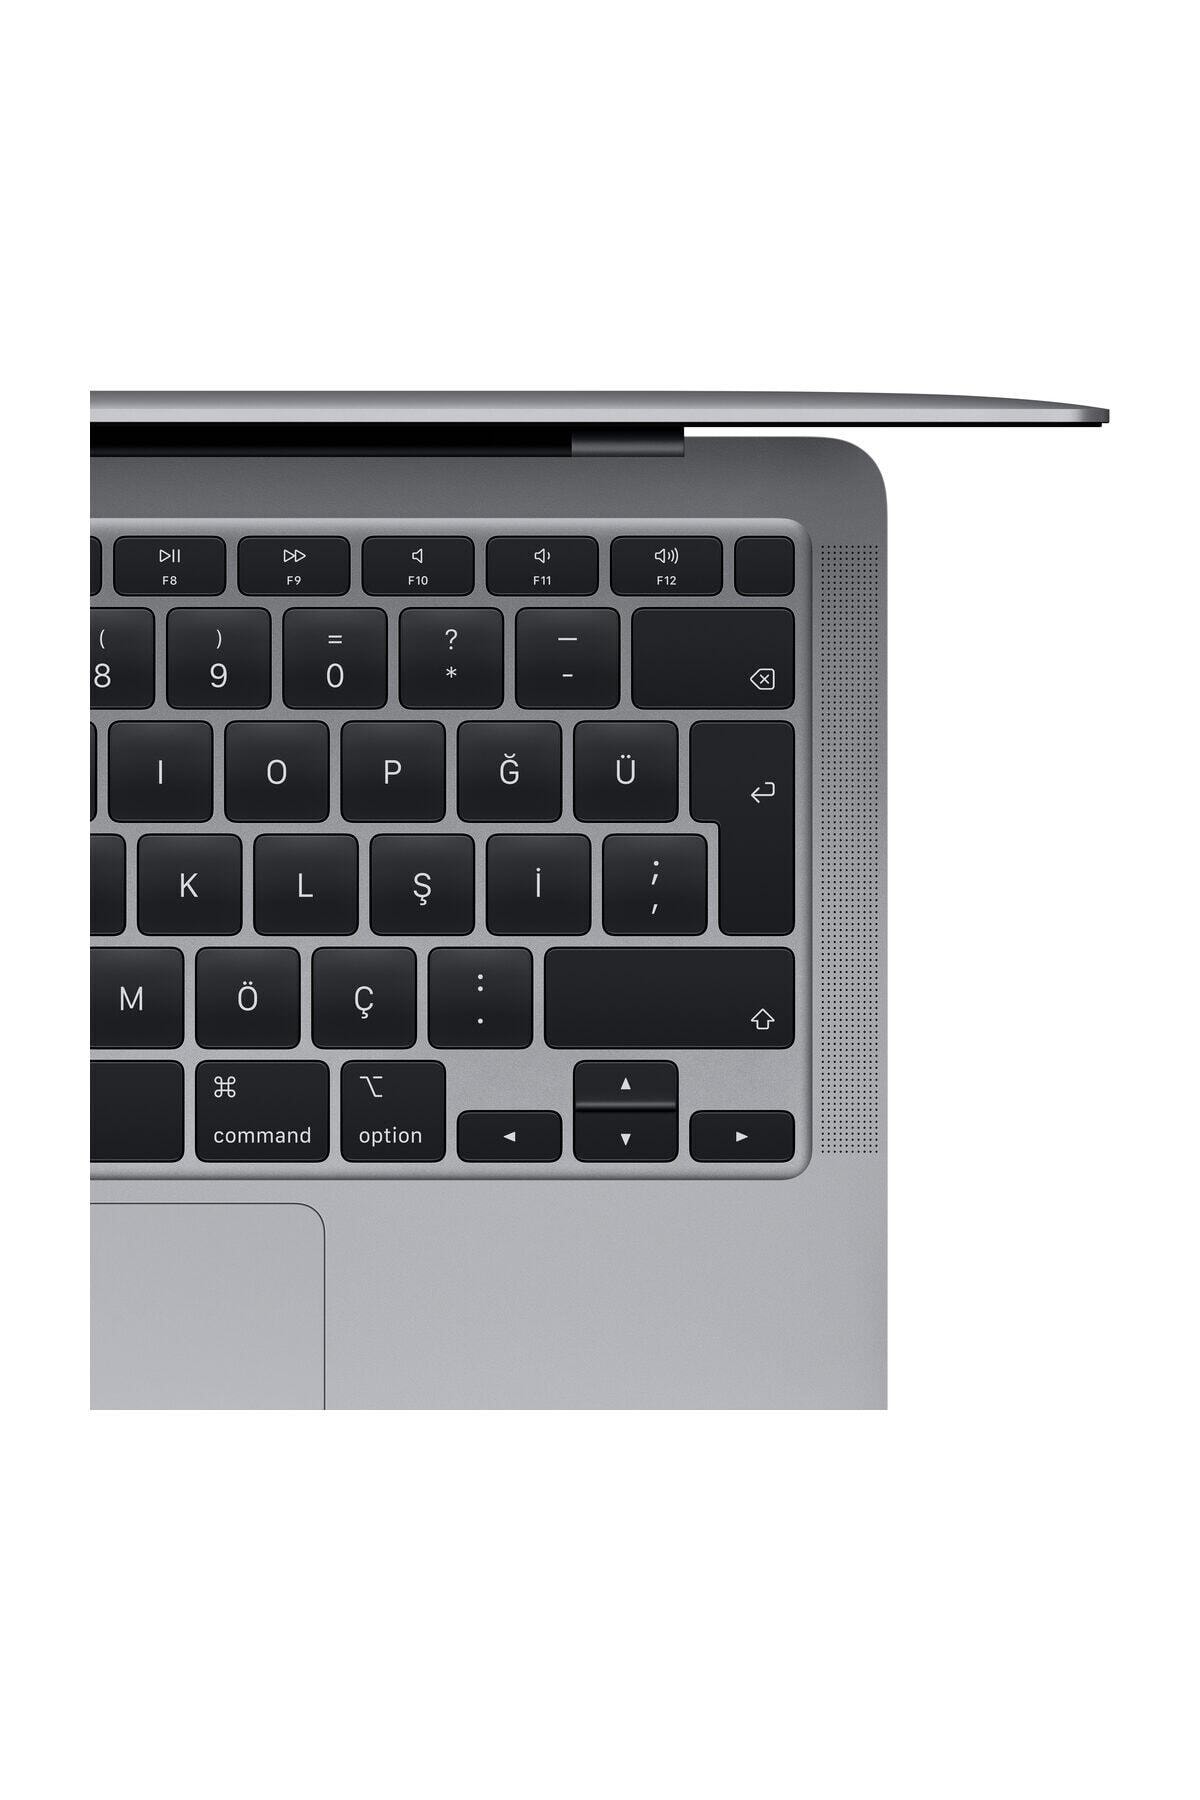 Apple Macbook Air M1 Çip 16gb 512gb Macos 13.3 Inç Qhd Taşınabilir Bilgisayar Uzay Grisi NE11184